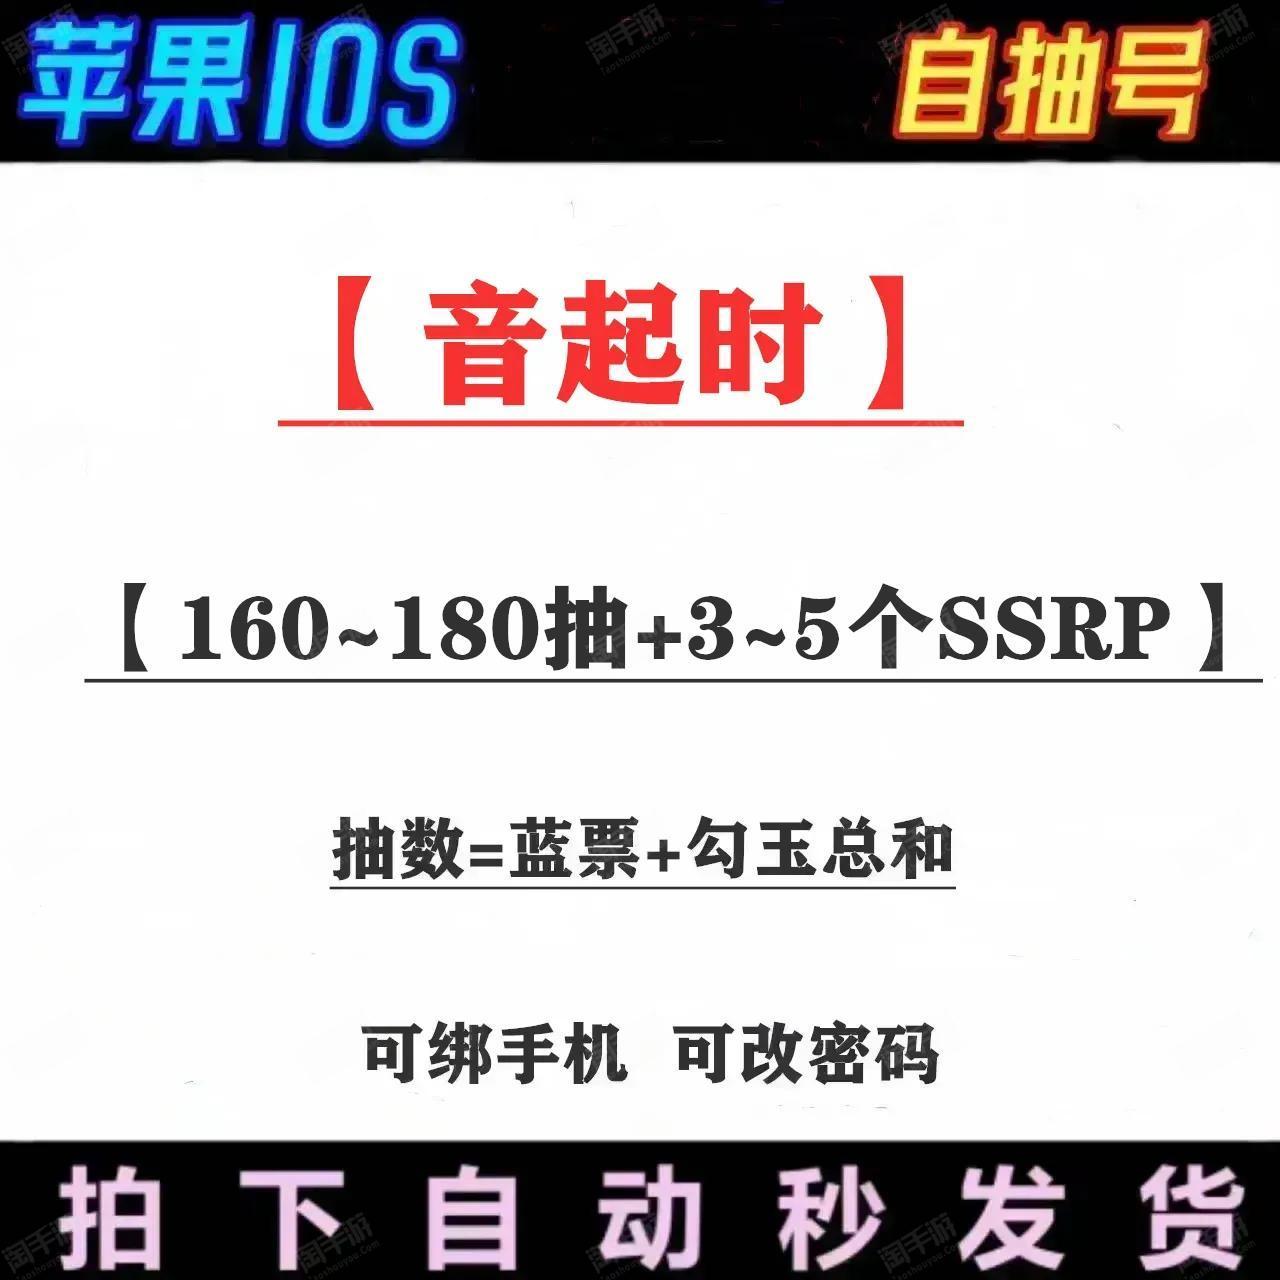 阴阳师【苹果官方】【音起时】单号160-180抽带3-5个SSRP